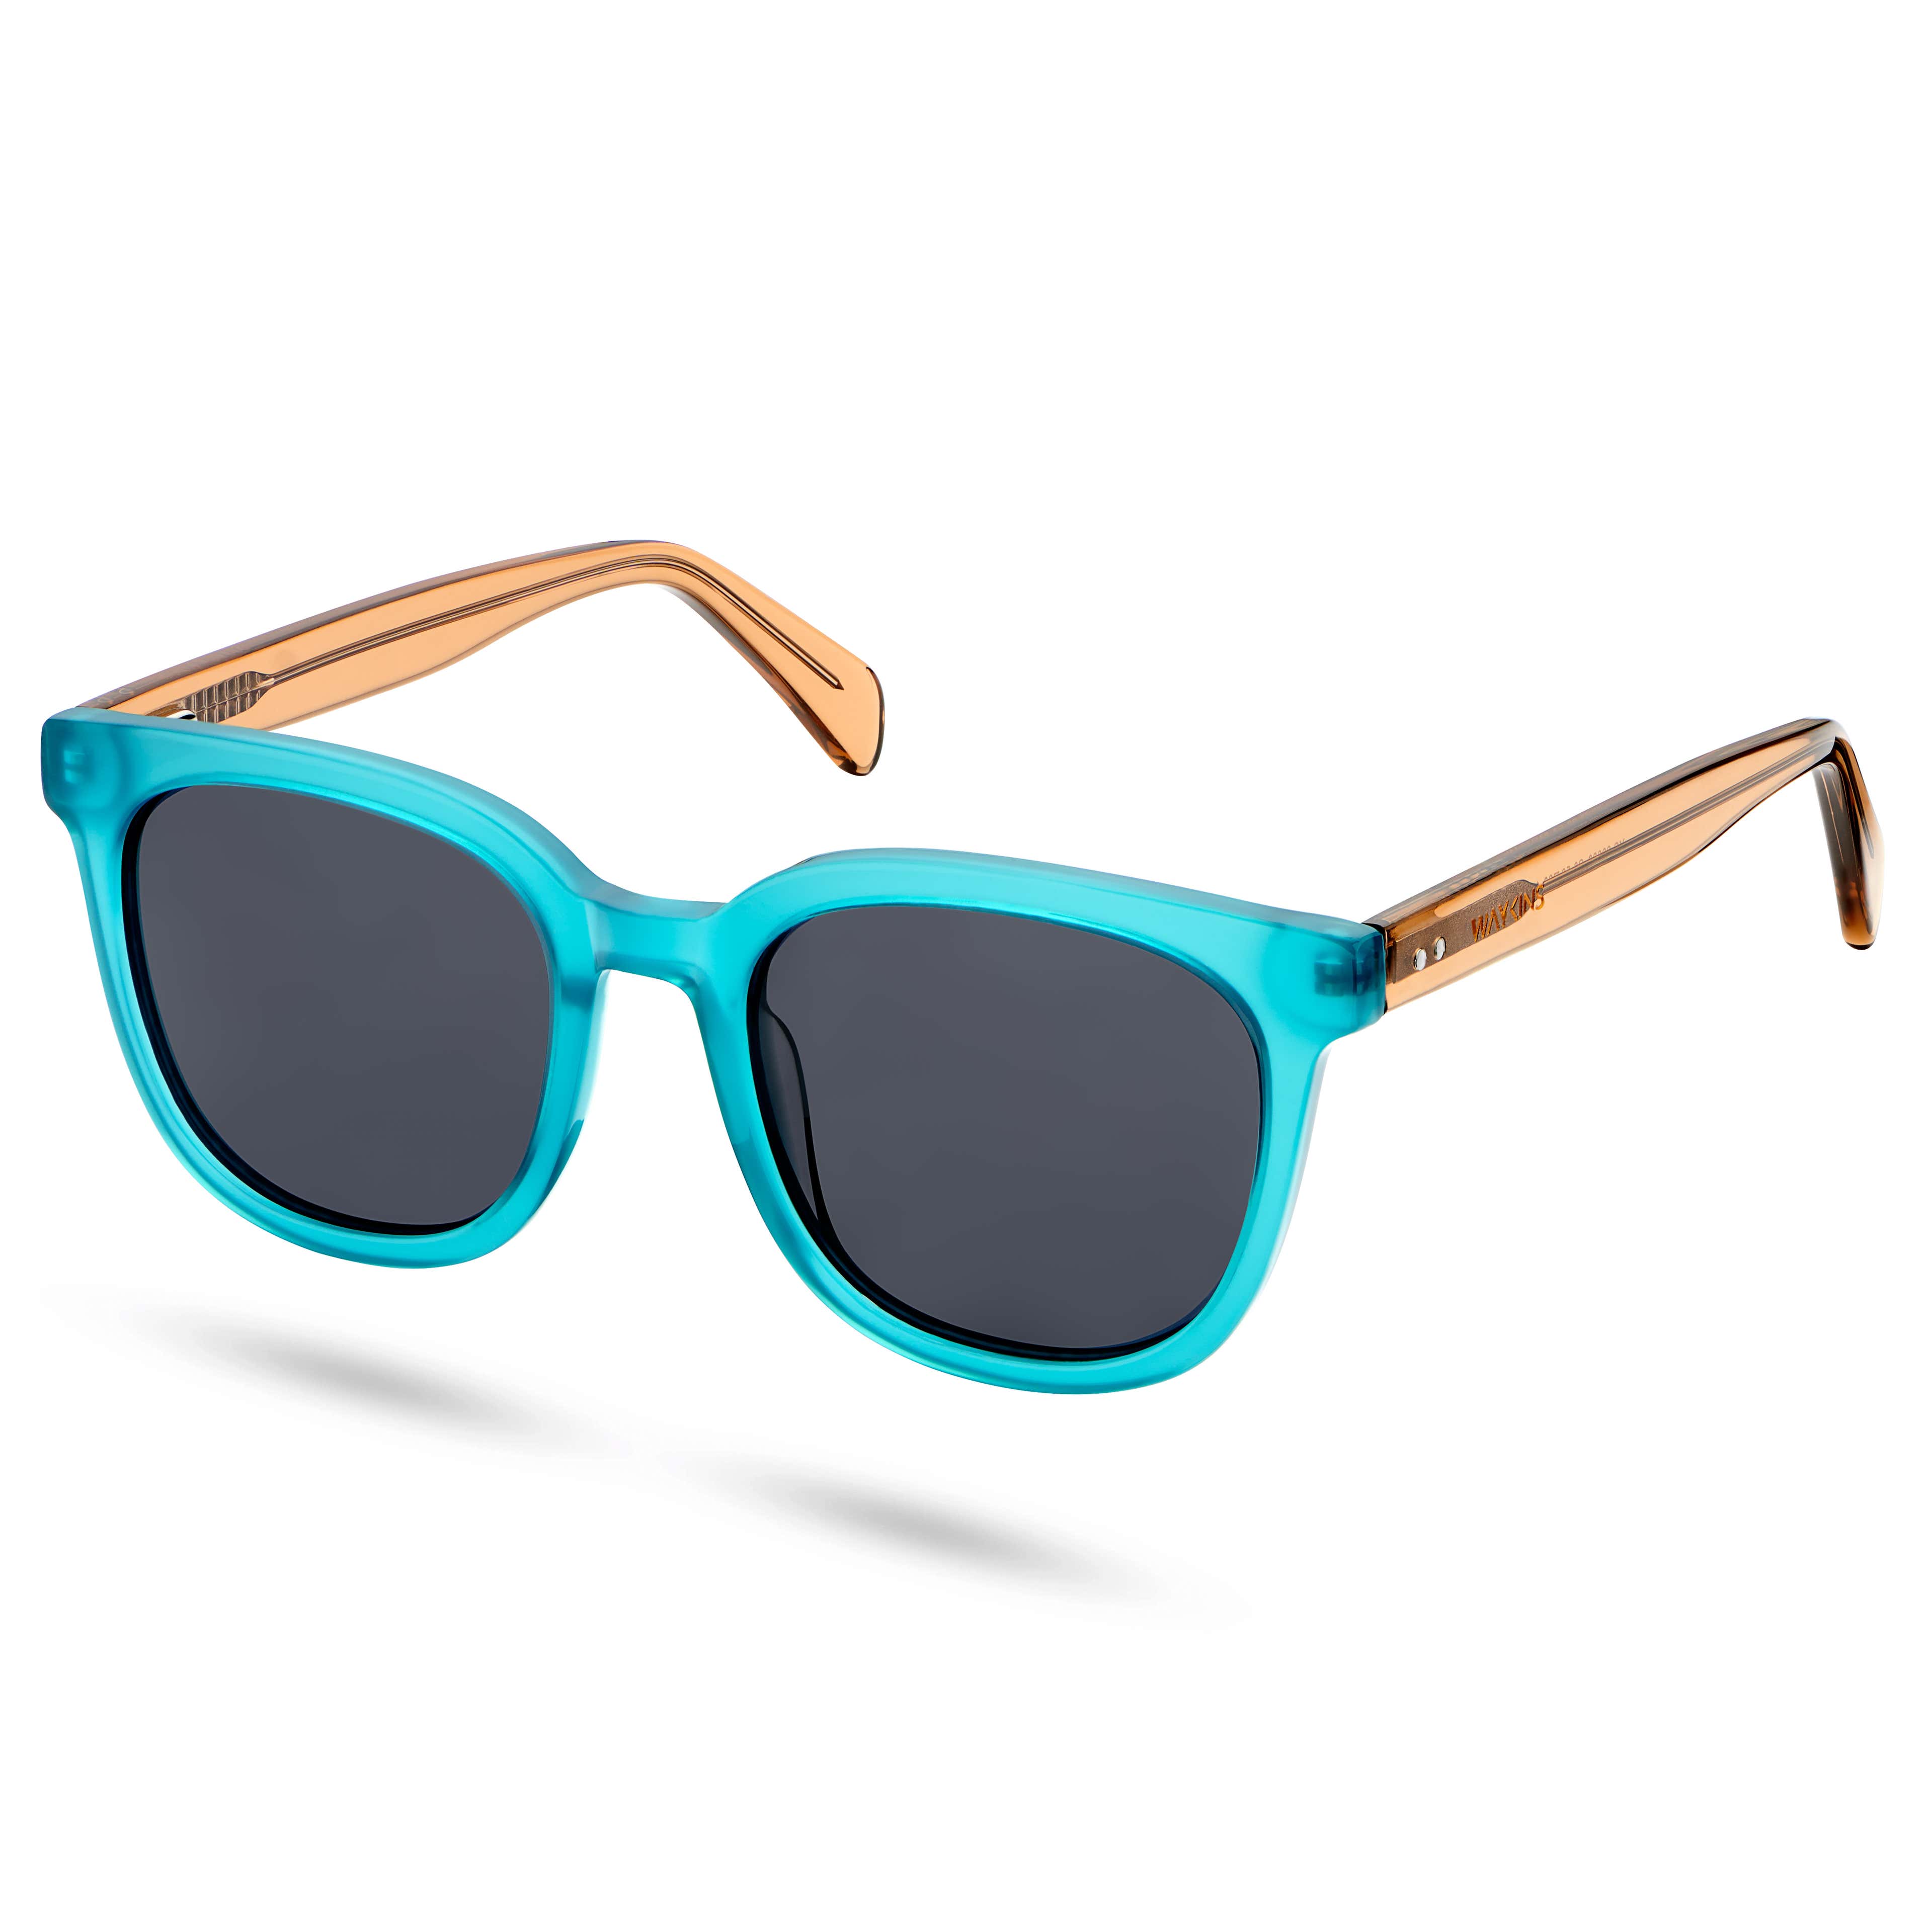 Gafas de sol polarizadas semitransparentes en azul y marrón